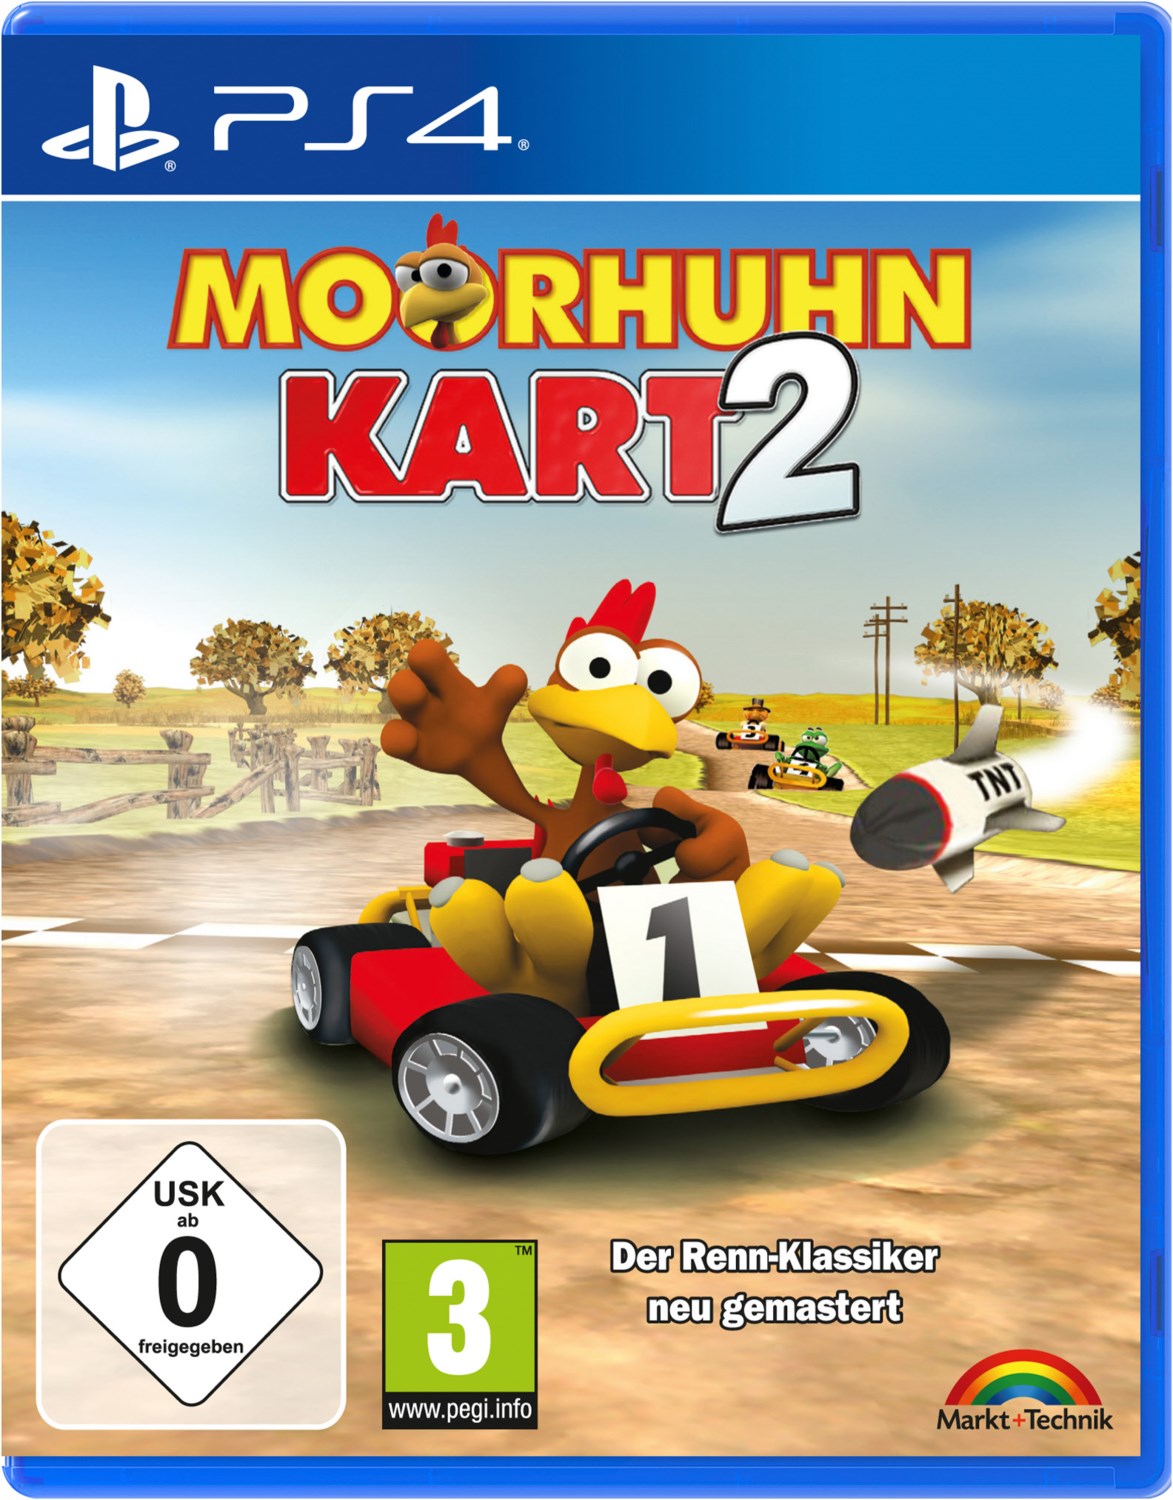 Image of PS4 Moorhuhn Kart 2